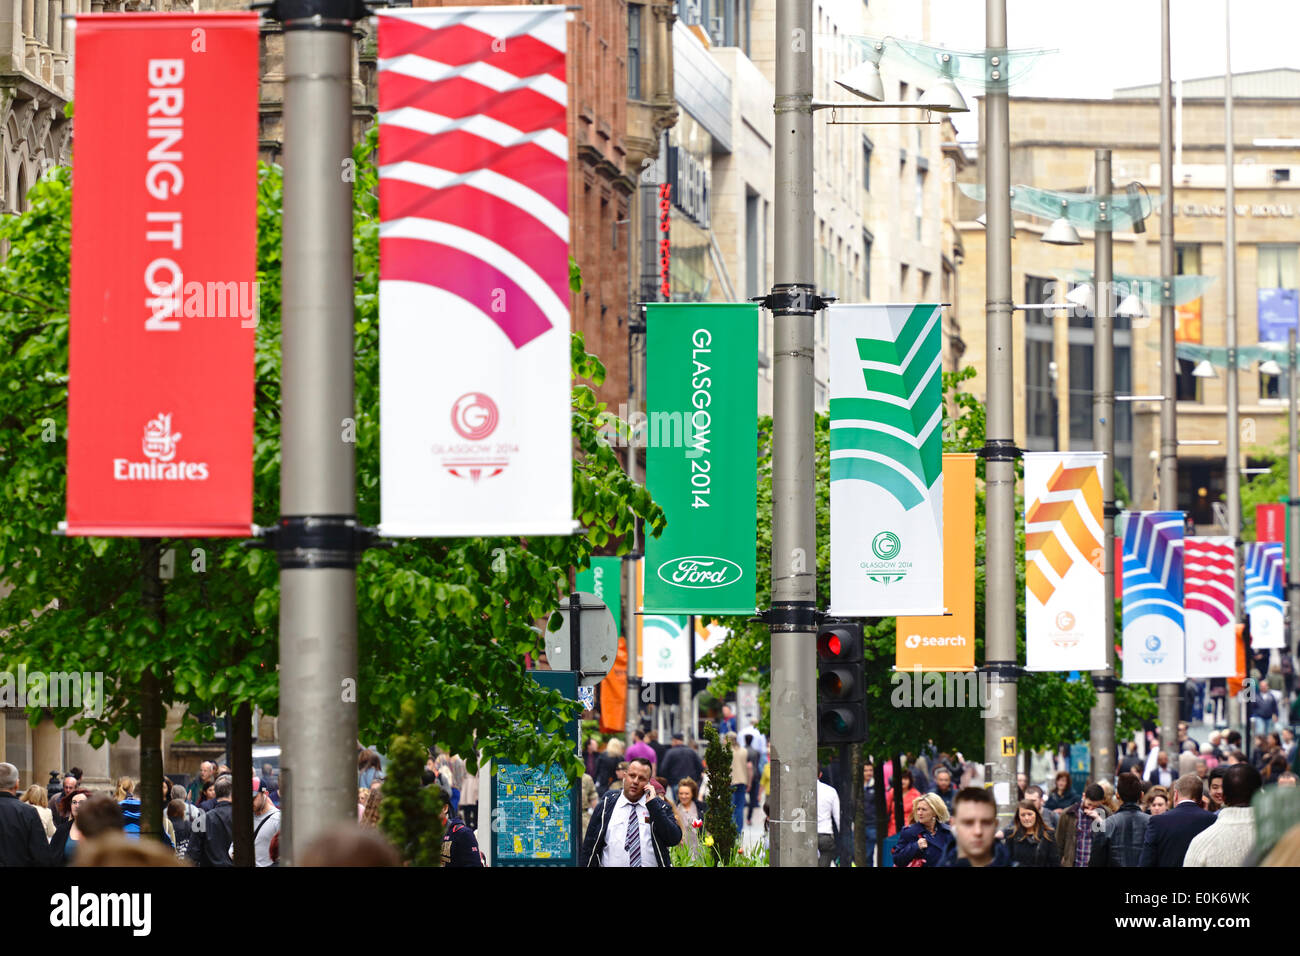 Buchanan Street, Glasgow, Schottland, Großbritannien, Donnerstag, 15. Mai 2014. Im Vorfeld der Commonwealth Games in Glasgow wurden farbenfrohe Banner aufgestellt, um das Stadtzentrum zu kleiden und Besucher willkommen zu heißen. Die Spiele laufen vom 23. Juli bis 3. August 2014. Stockfoto